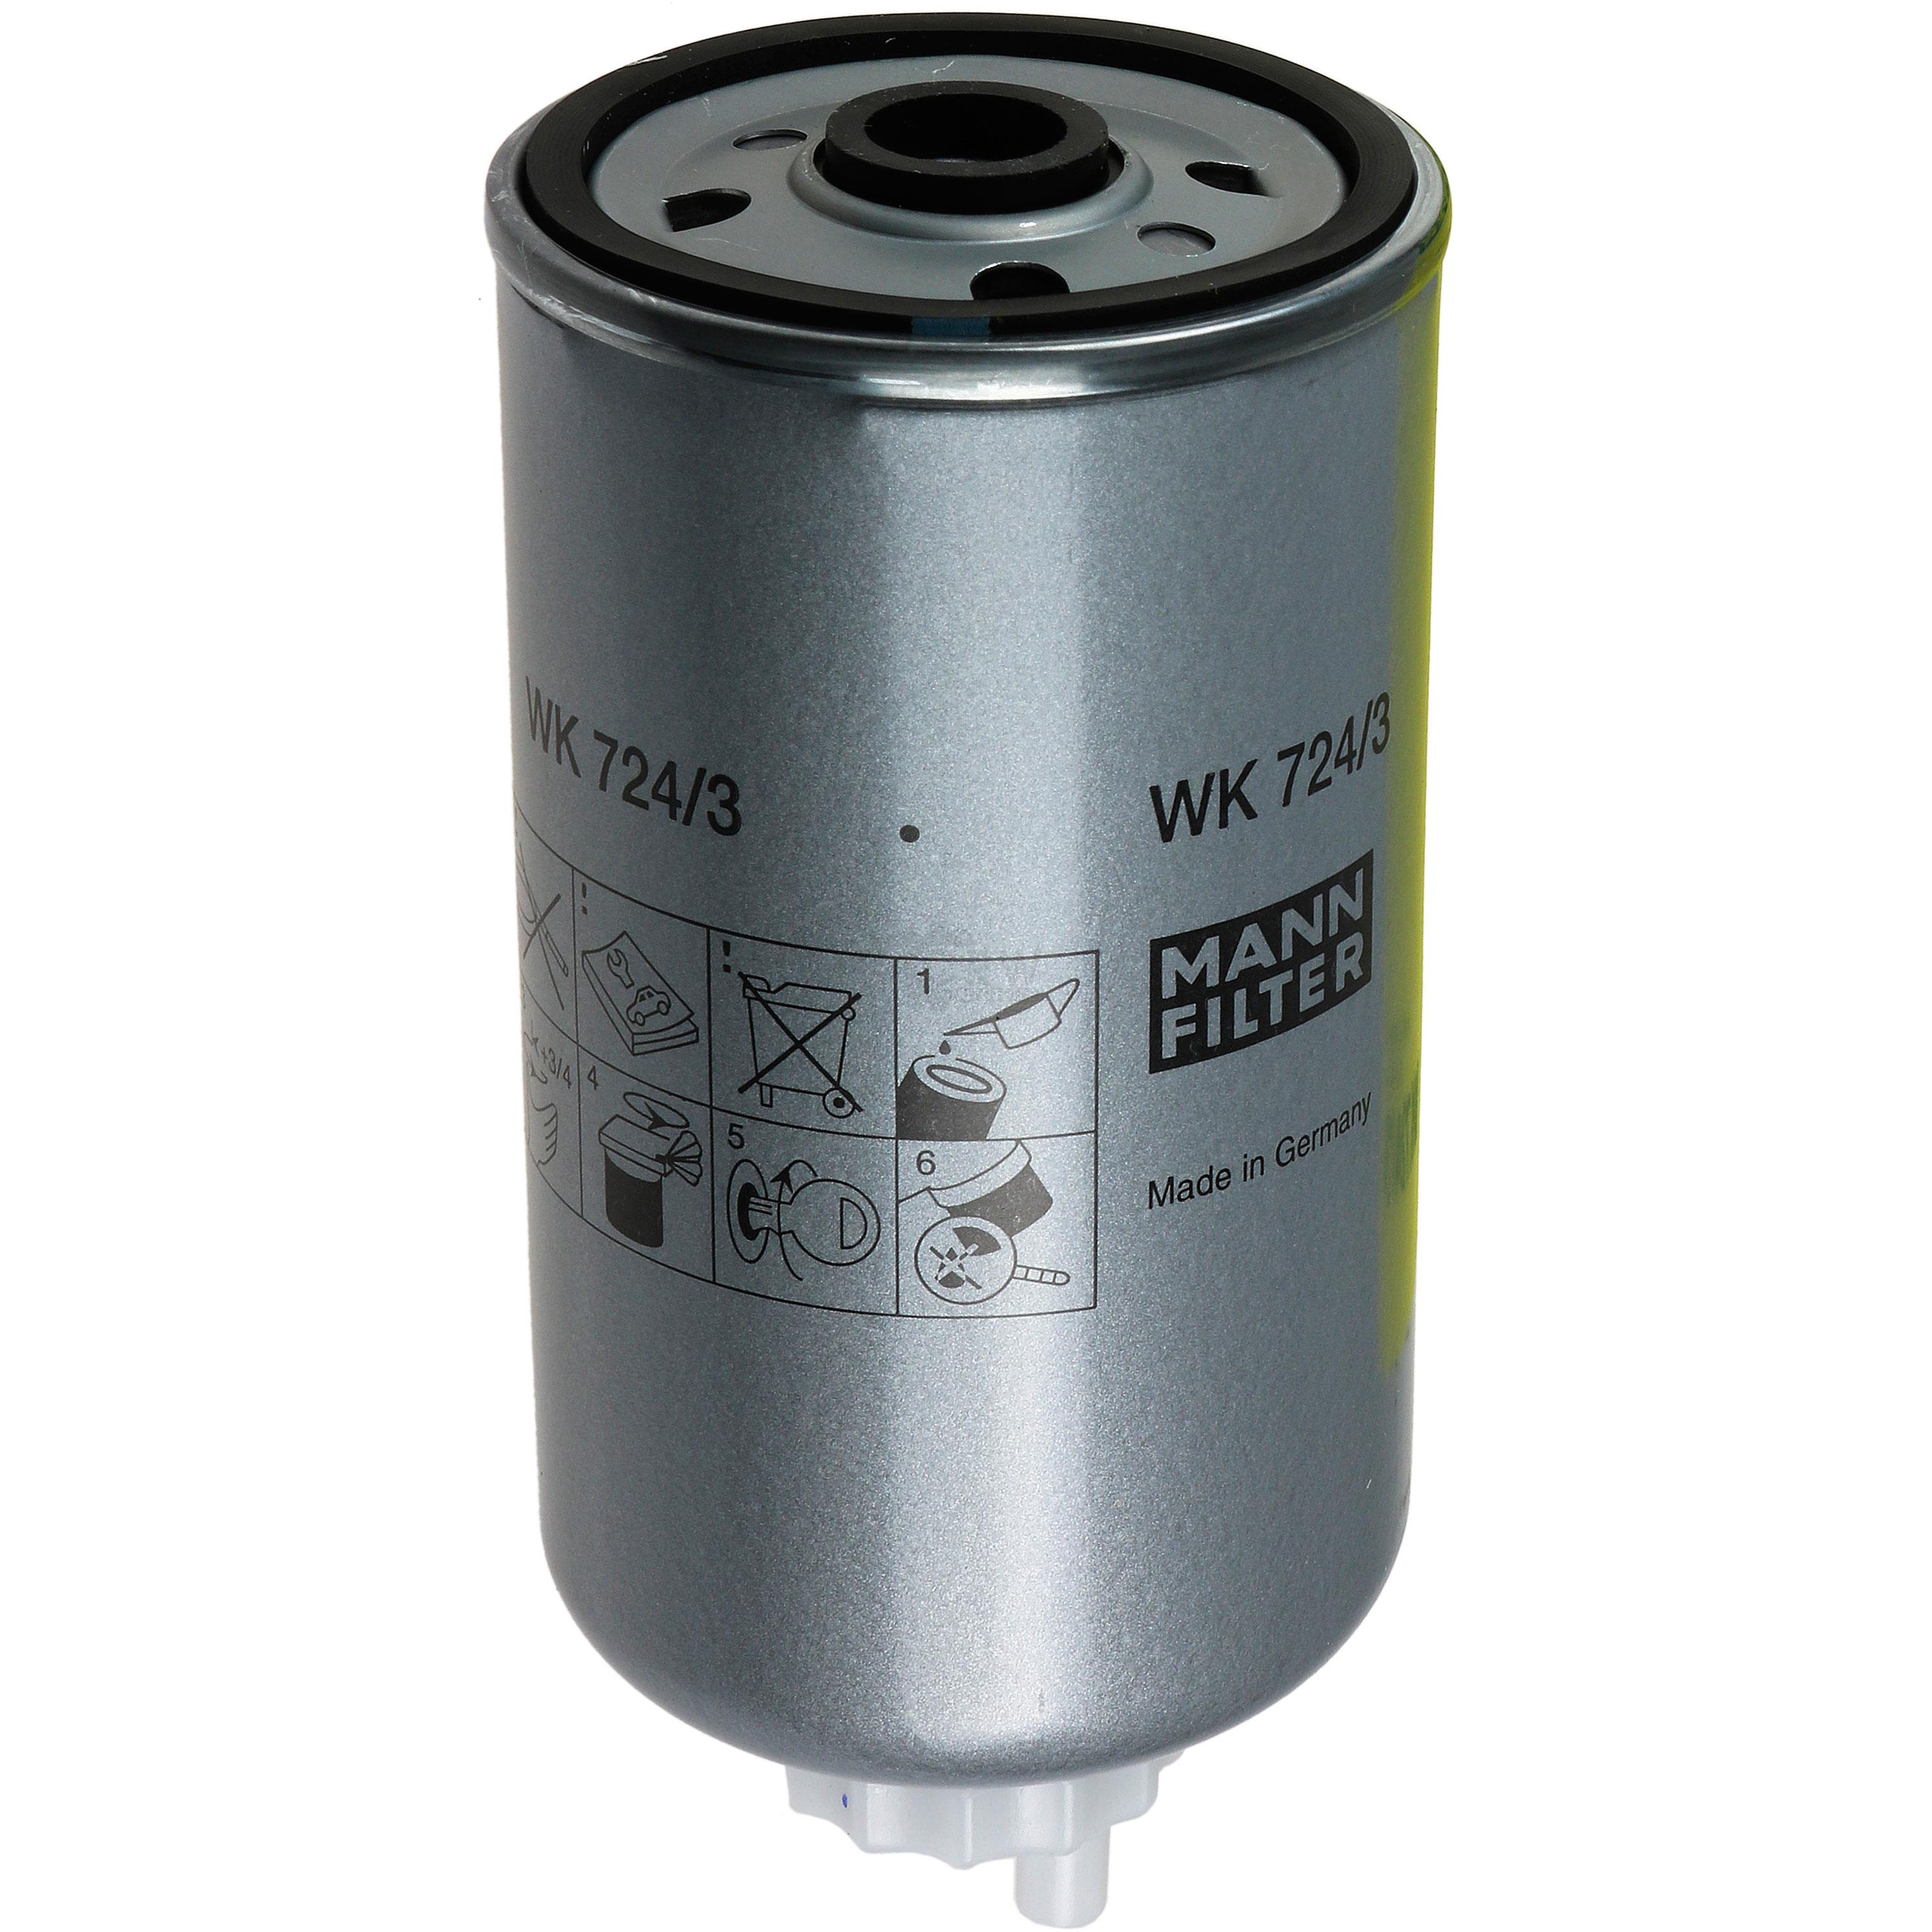 MANN-FILTER Kraftstofffilter WK 724/3 Fuel Filter